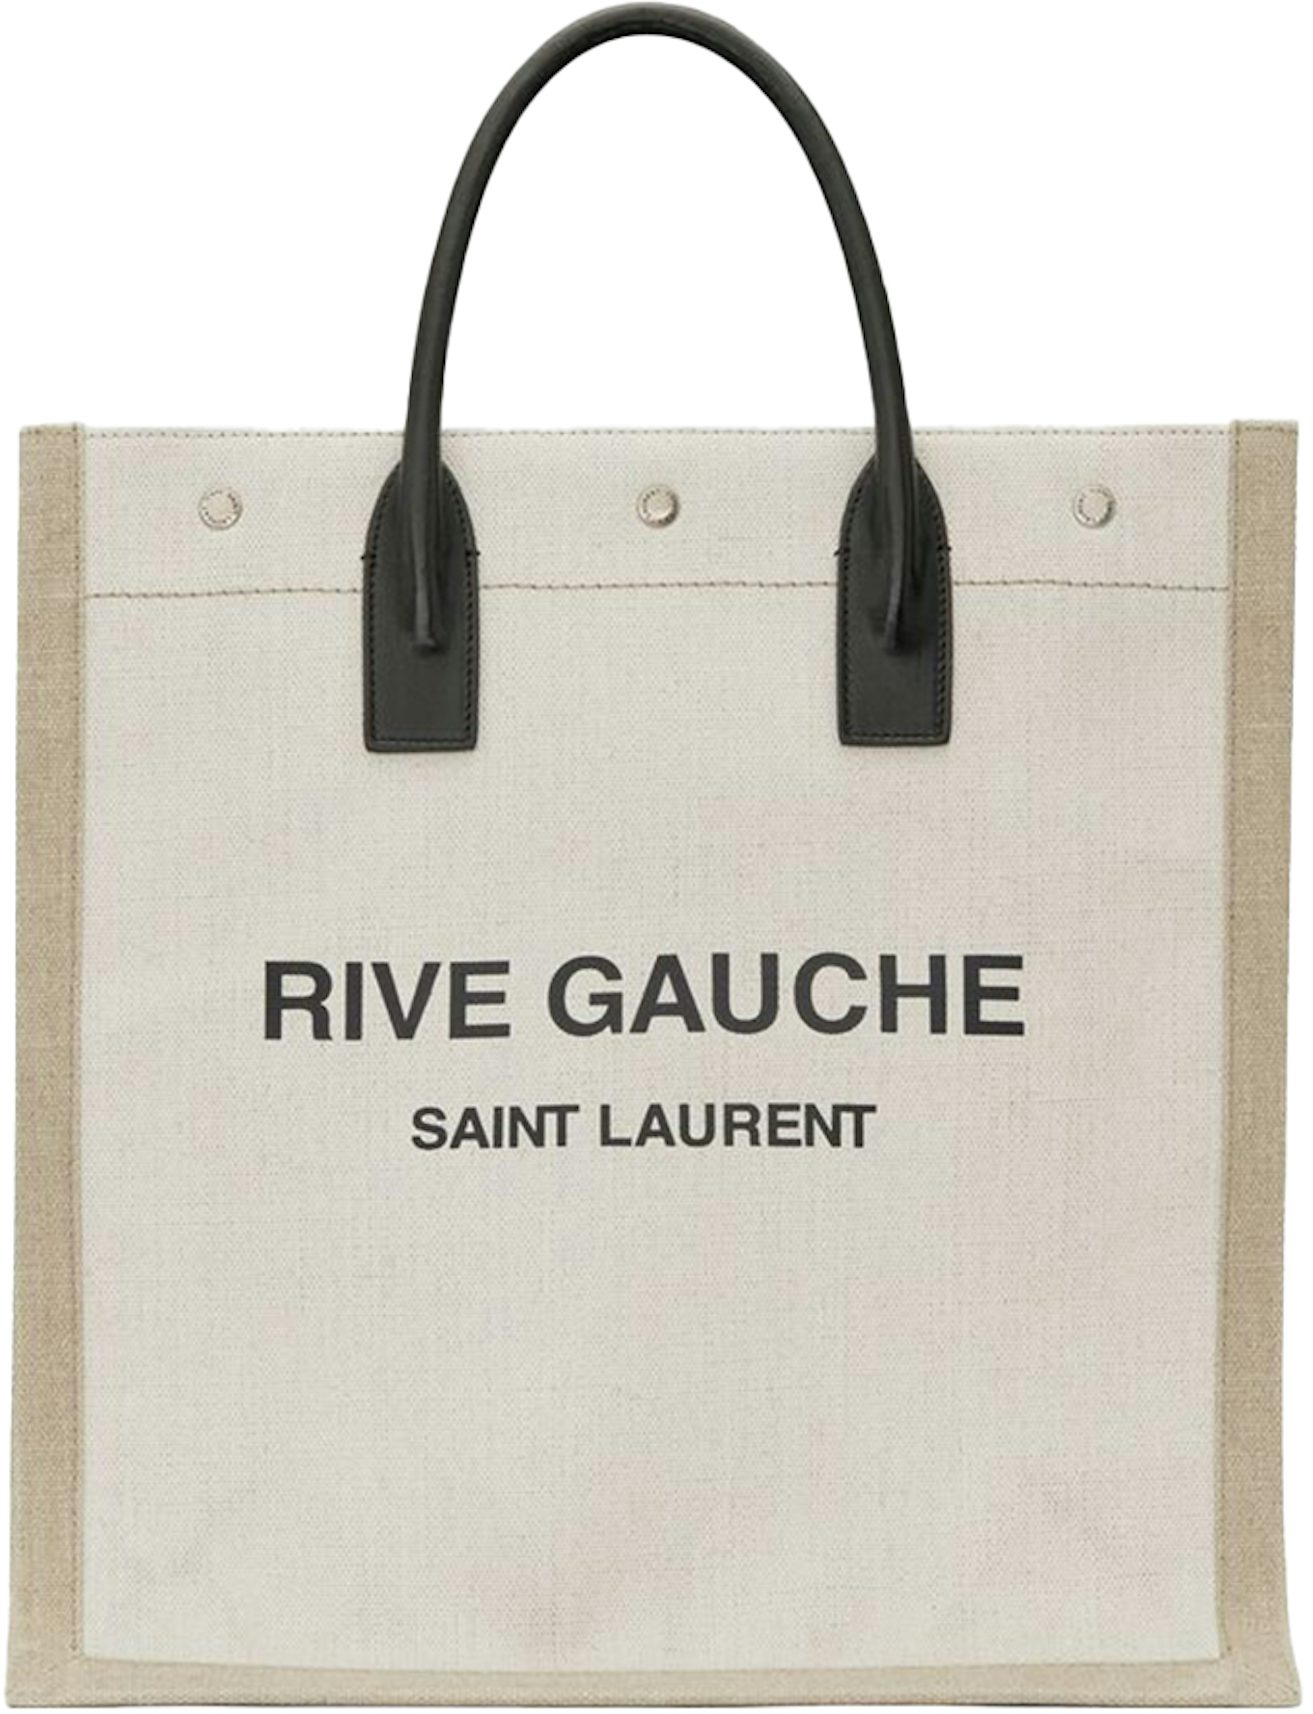 Saint Laurent Rive Gauche Canvas Tote Bag for Women